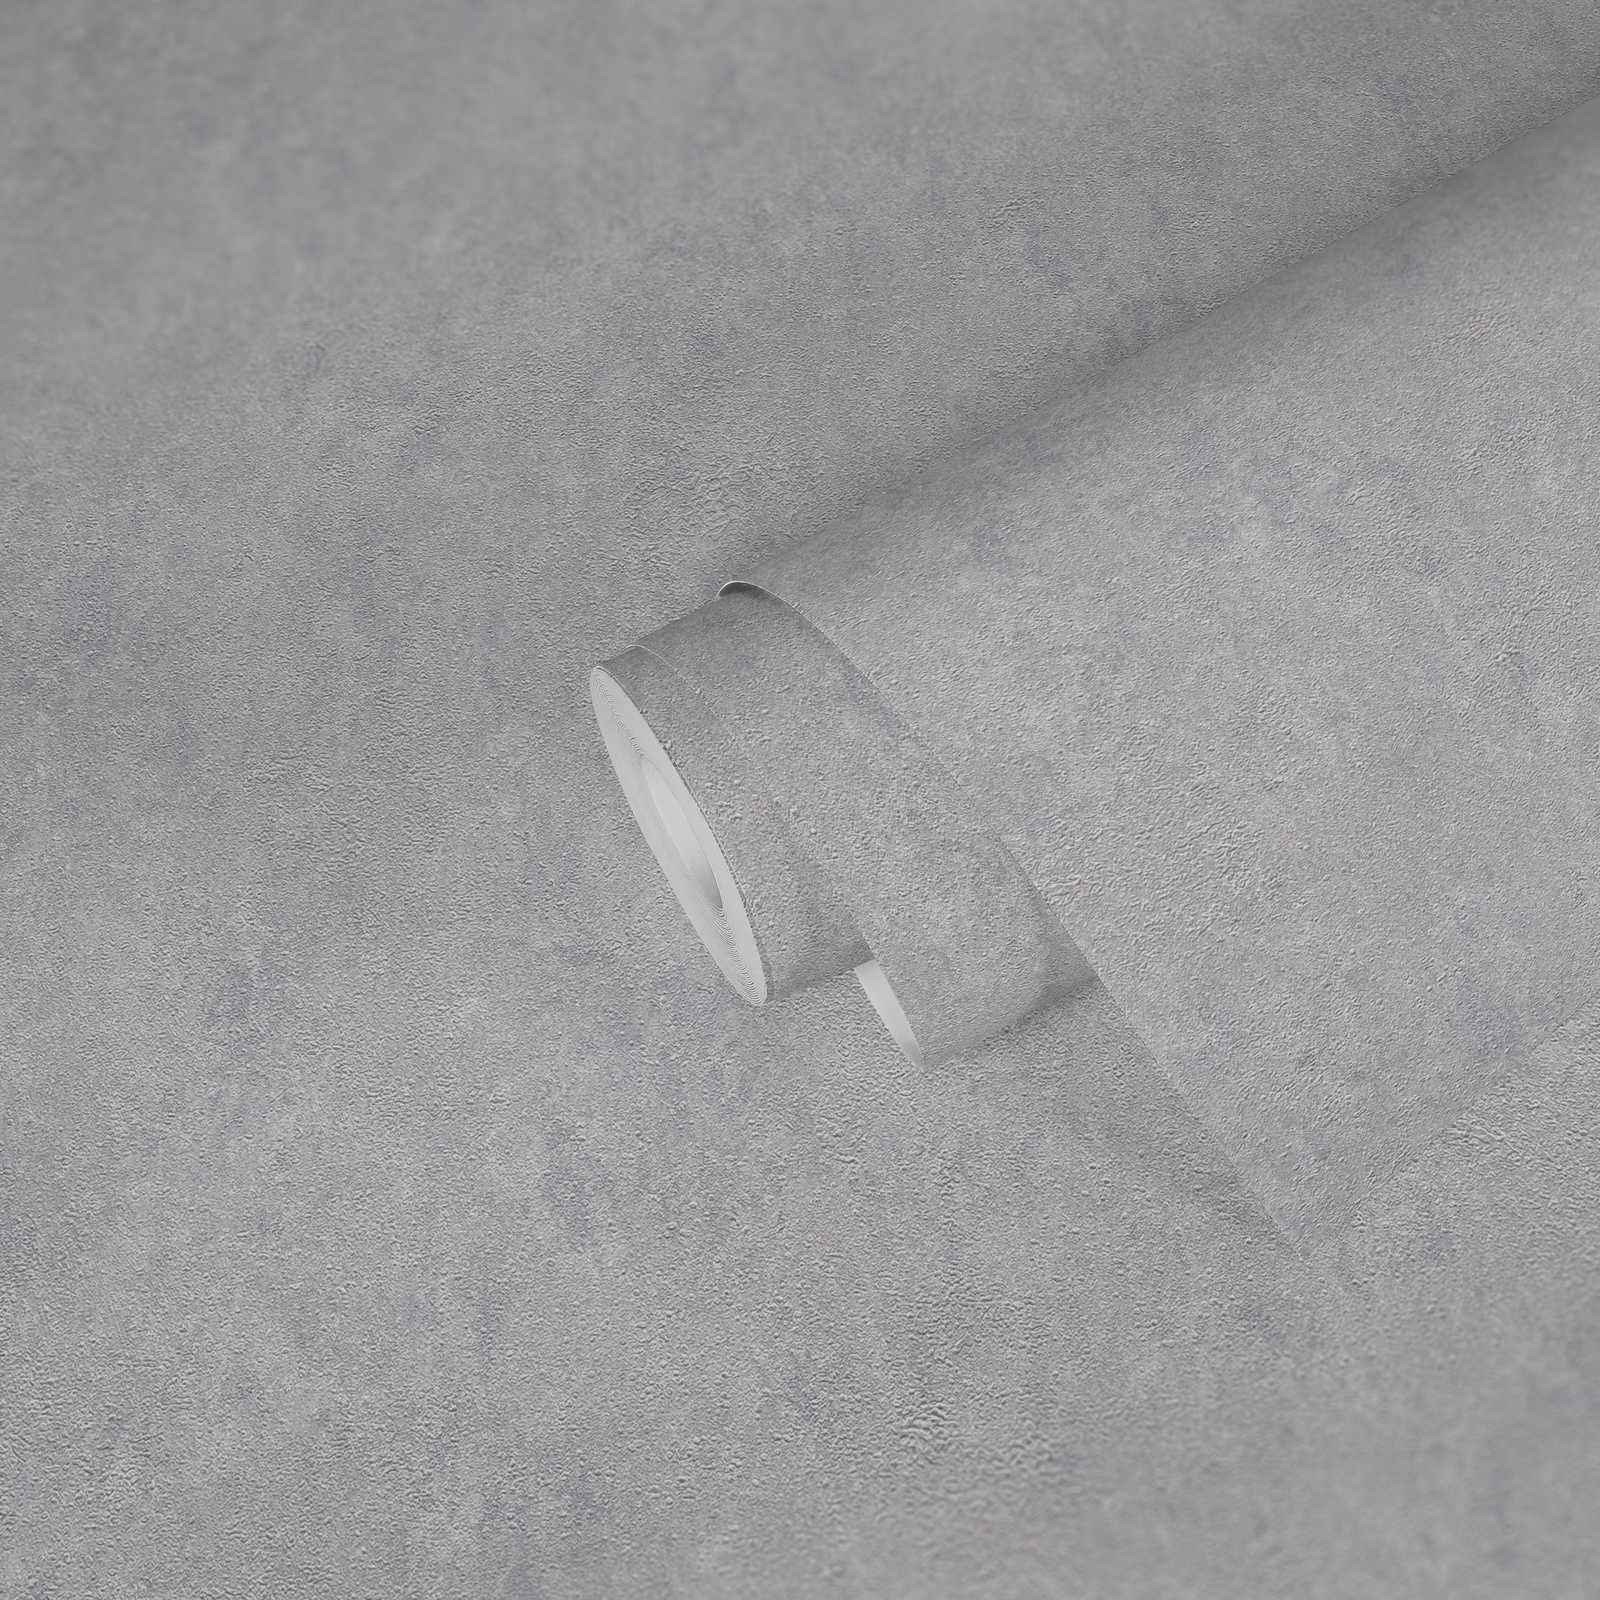             Einfarbige Strukturtapete glänzend mit Metalliceffekt – Grau, Silber
        